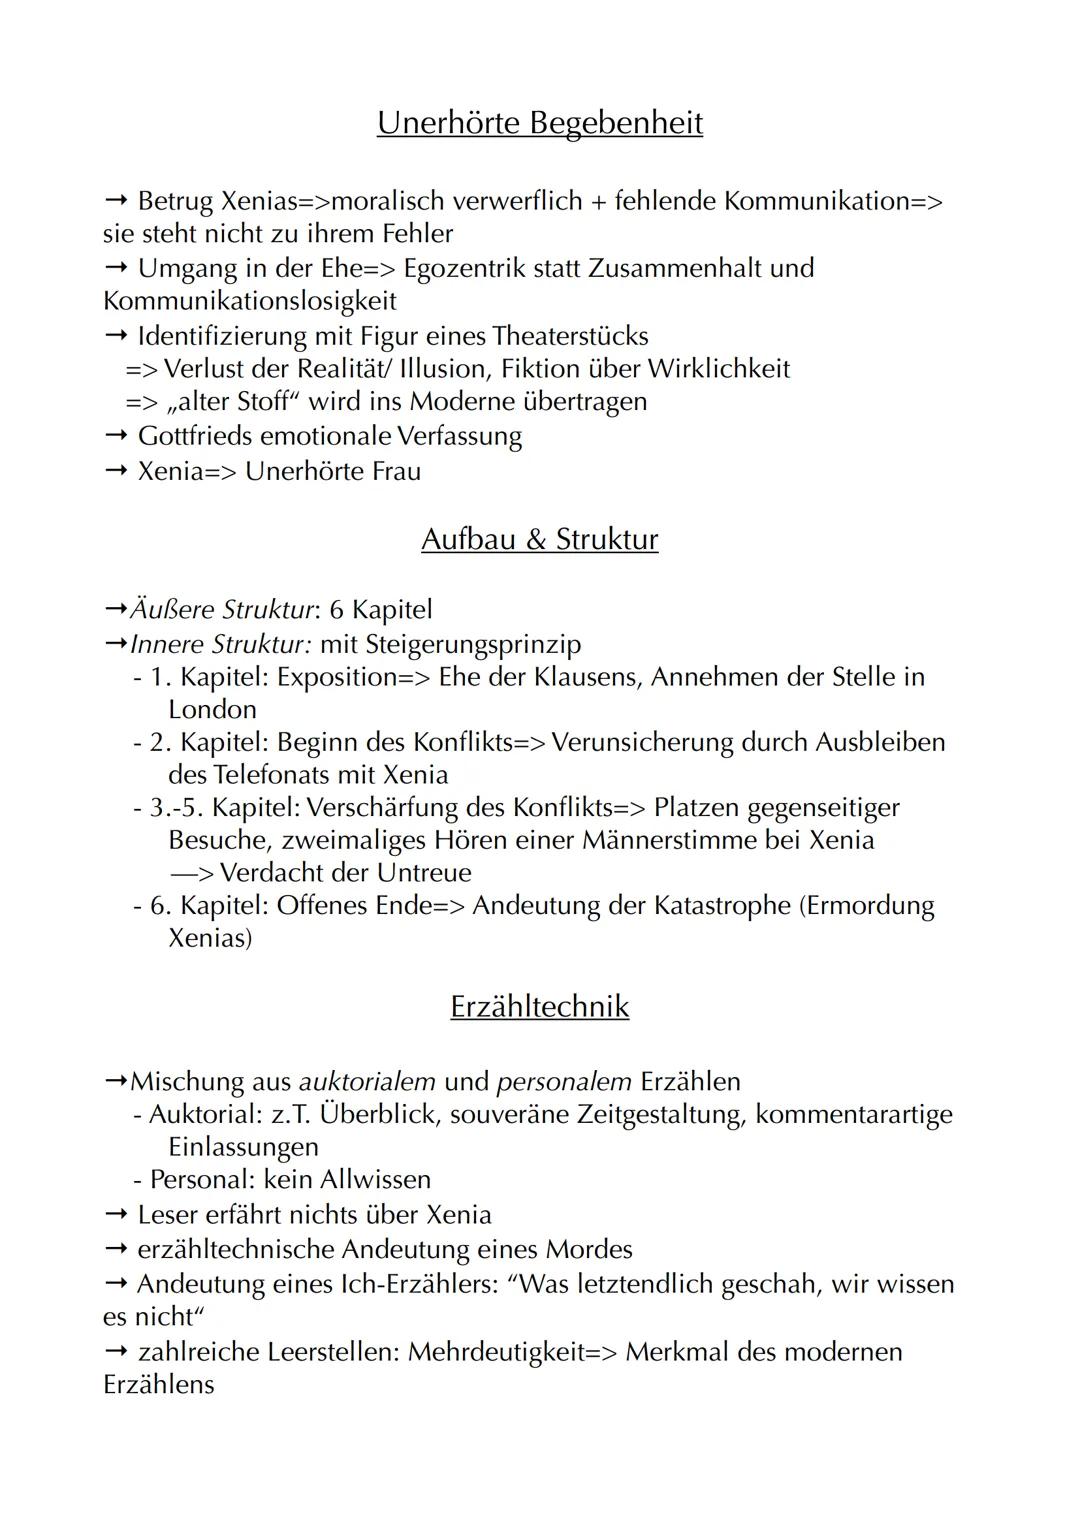 Das Haus in der Dorotheenstraße
Autor: Hartmut Lange
Jahr: 2013
Textsorte: Novelle
Aufbau: 5 Kapitel
Protagonisten: Xenia Klausen & Gottfrie